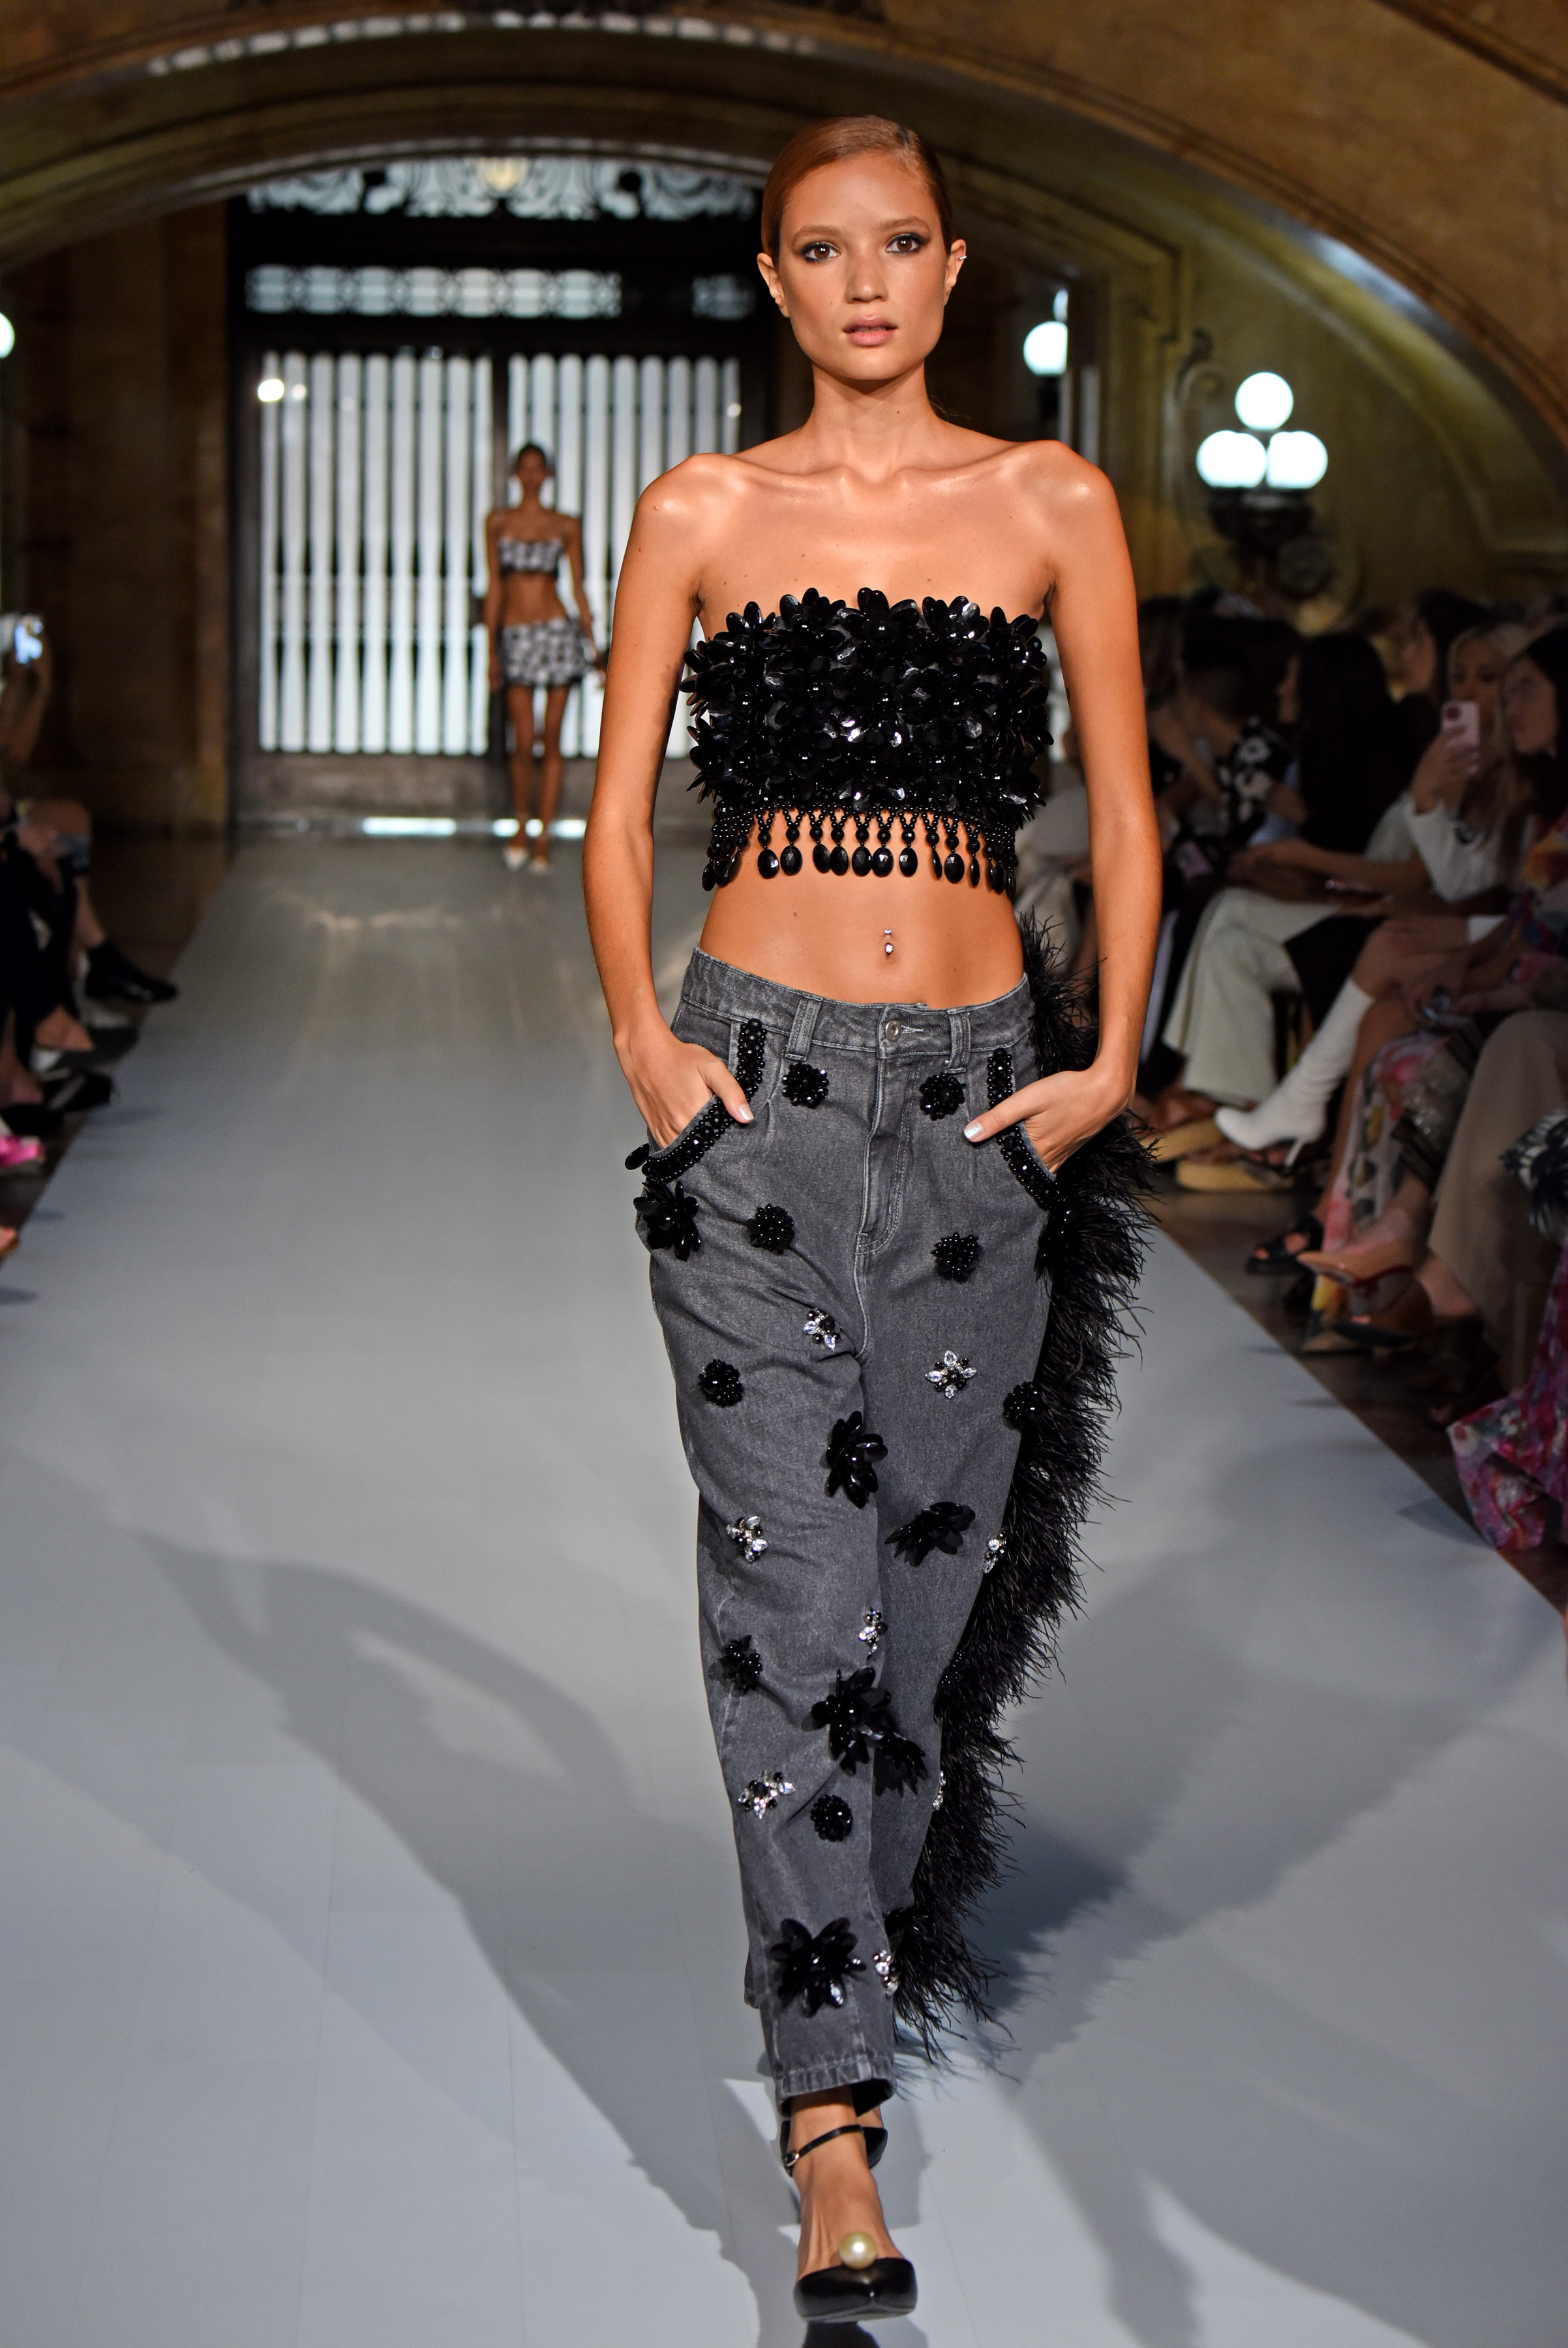 Desfile de primavera-verão 2023 da PatBo na semana de moda de Nova York. Modelo usando top preto e calça jeans escura com aplicações em preto